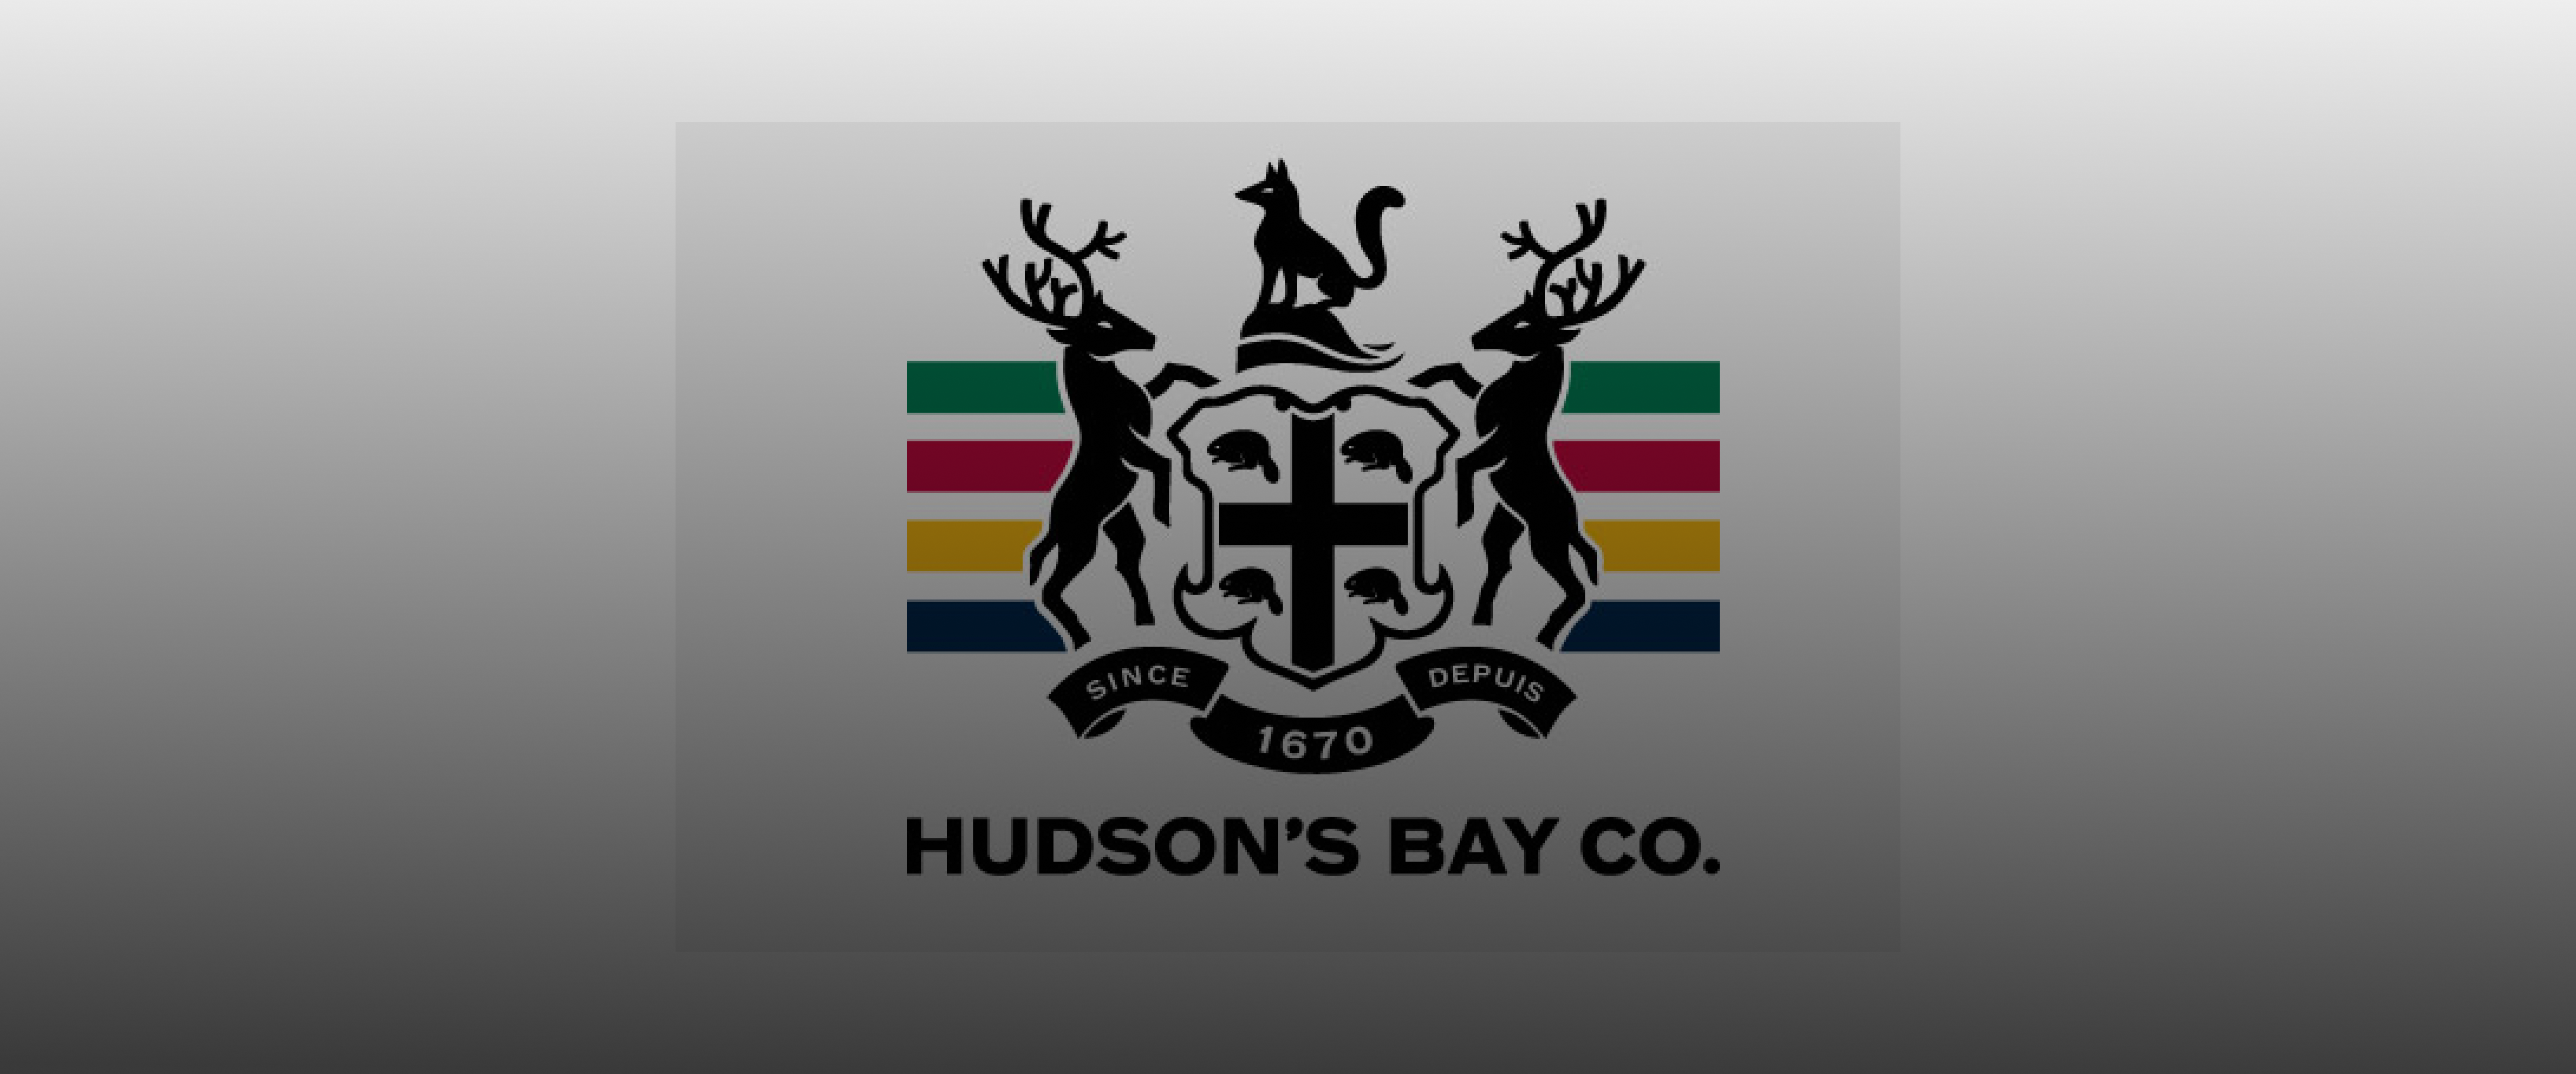 Hudson's bay case study banner image